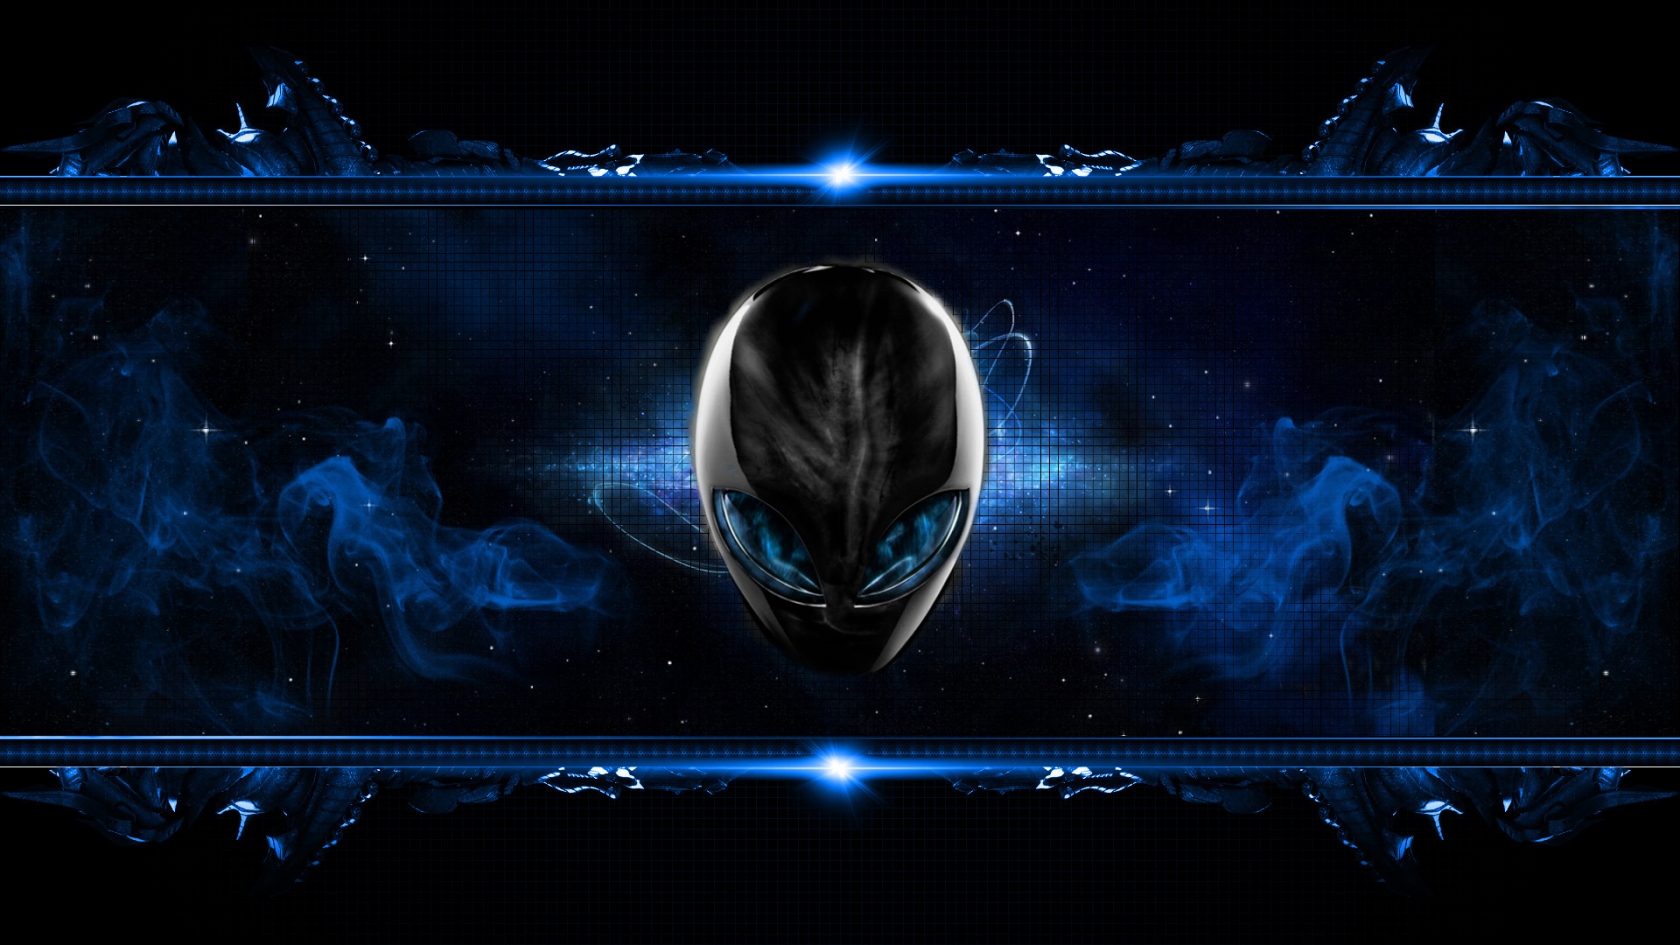 Blue Alien for 1680 x 945 HDTV resolution